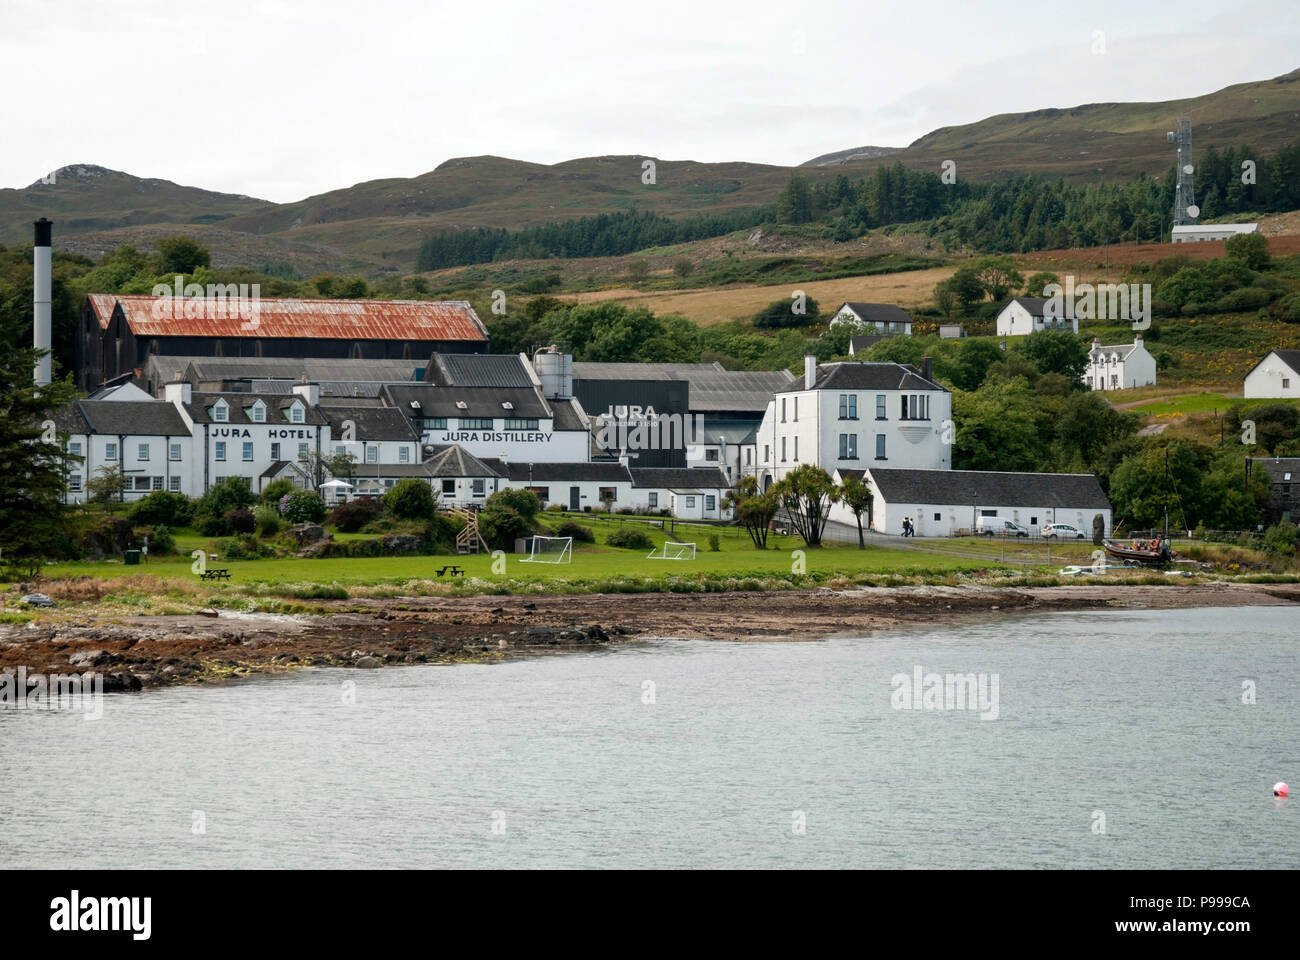 Jura Scotch Whisky Brennerei & Jura Hotel craighouse Isle of Jura Inneren Hebriden Schottland Blick auf die weiße Fassade des Jura Highland Scotch Malt whi Stockfoto